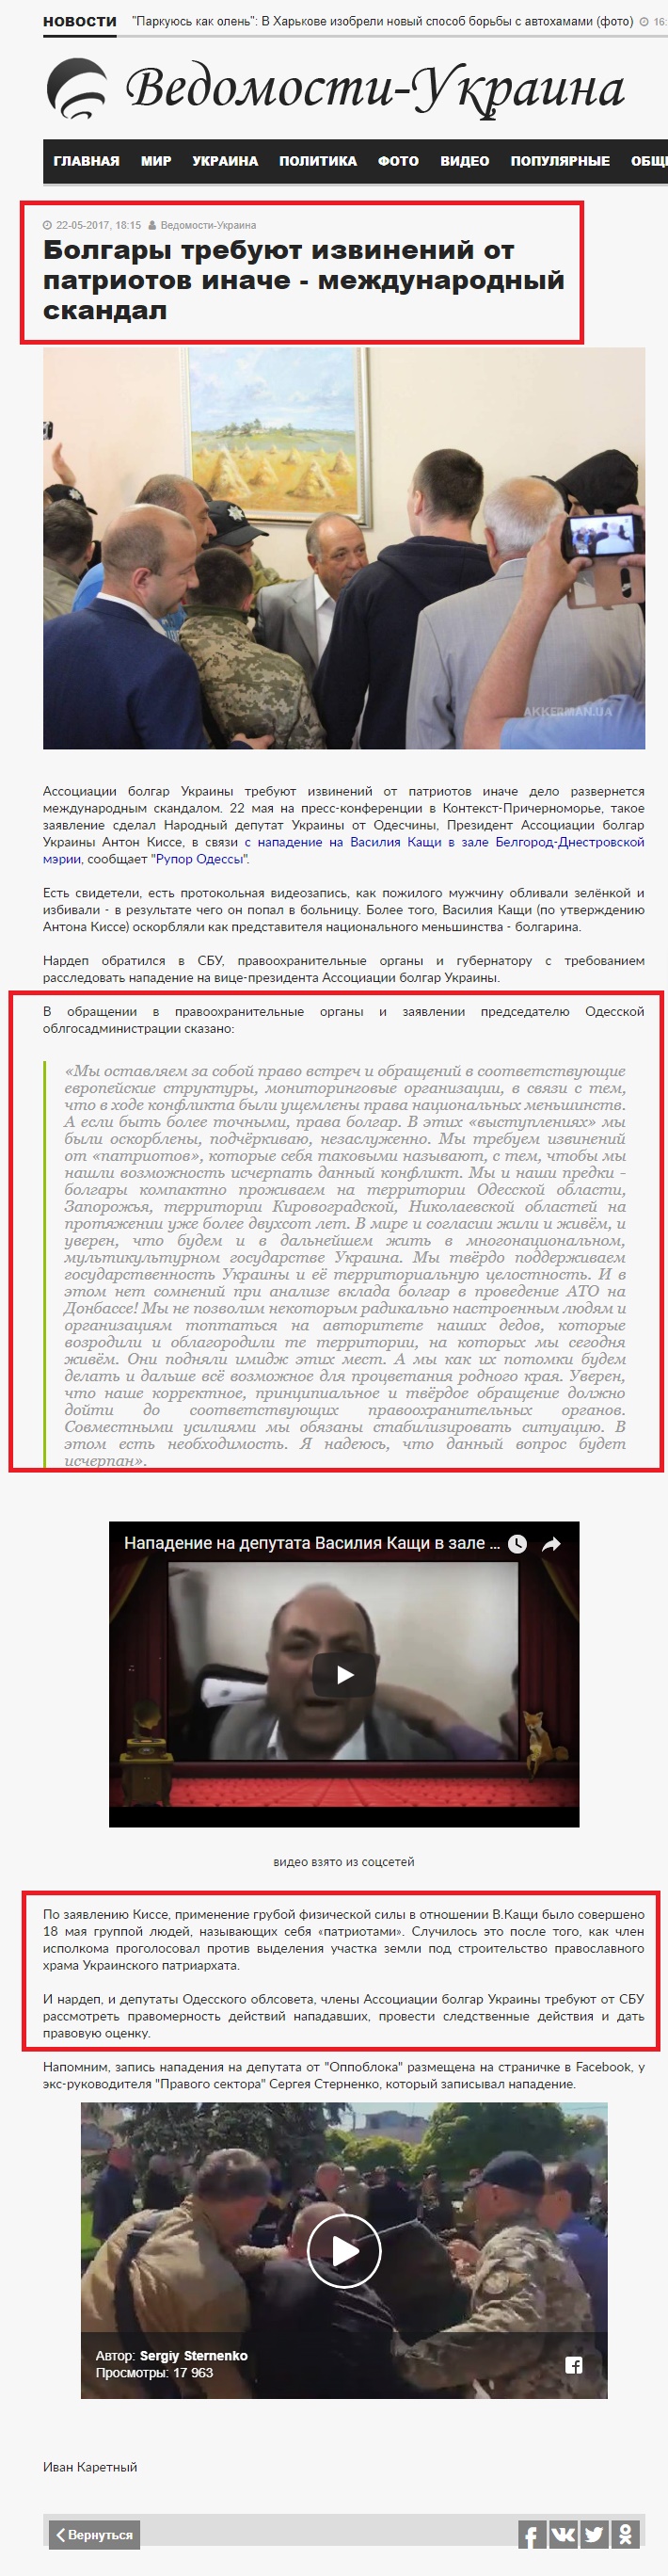 http://vedomosti-ua.com/64281-bolgary-trebuyut-izvineniya-ot-patriotov-inache-mezhdunarodnyy-skandal.html